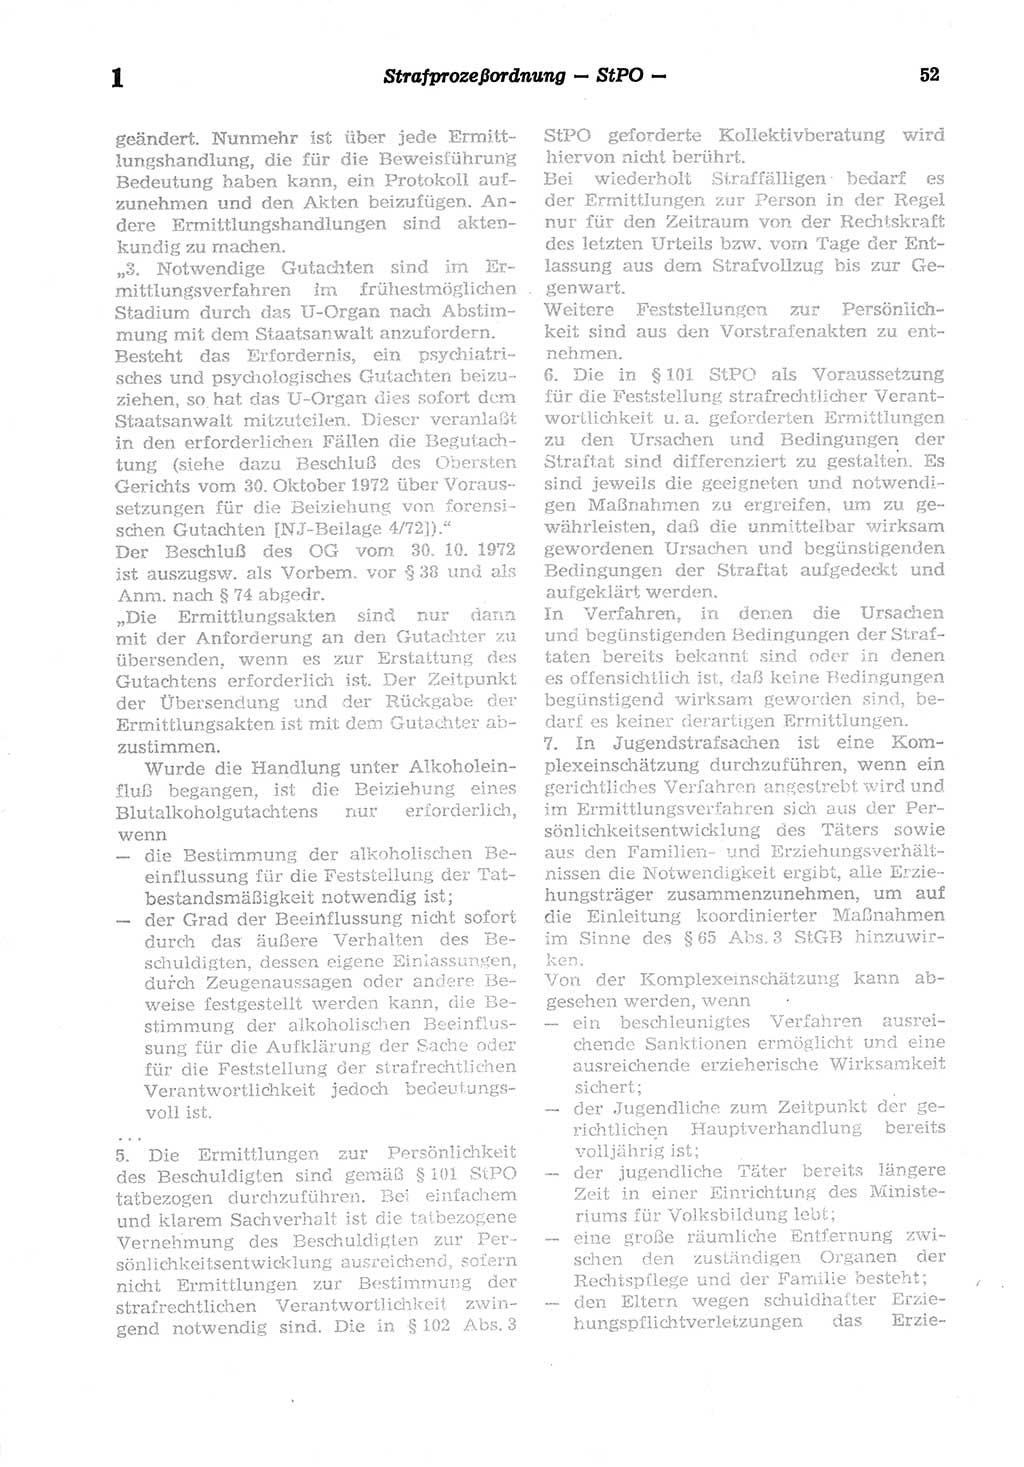 Strafprozeßordnung (StPO) der Deutschen Demokratischen Republik (DDR) sowie angrenzende Gesetze und Bestimmungen 1977, Seite 52 (StPO DDR Ges. Best. 1977, S. 52)